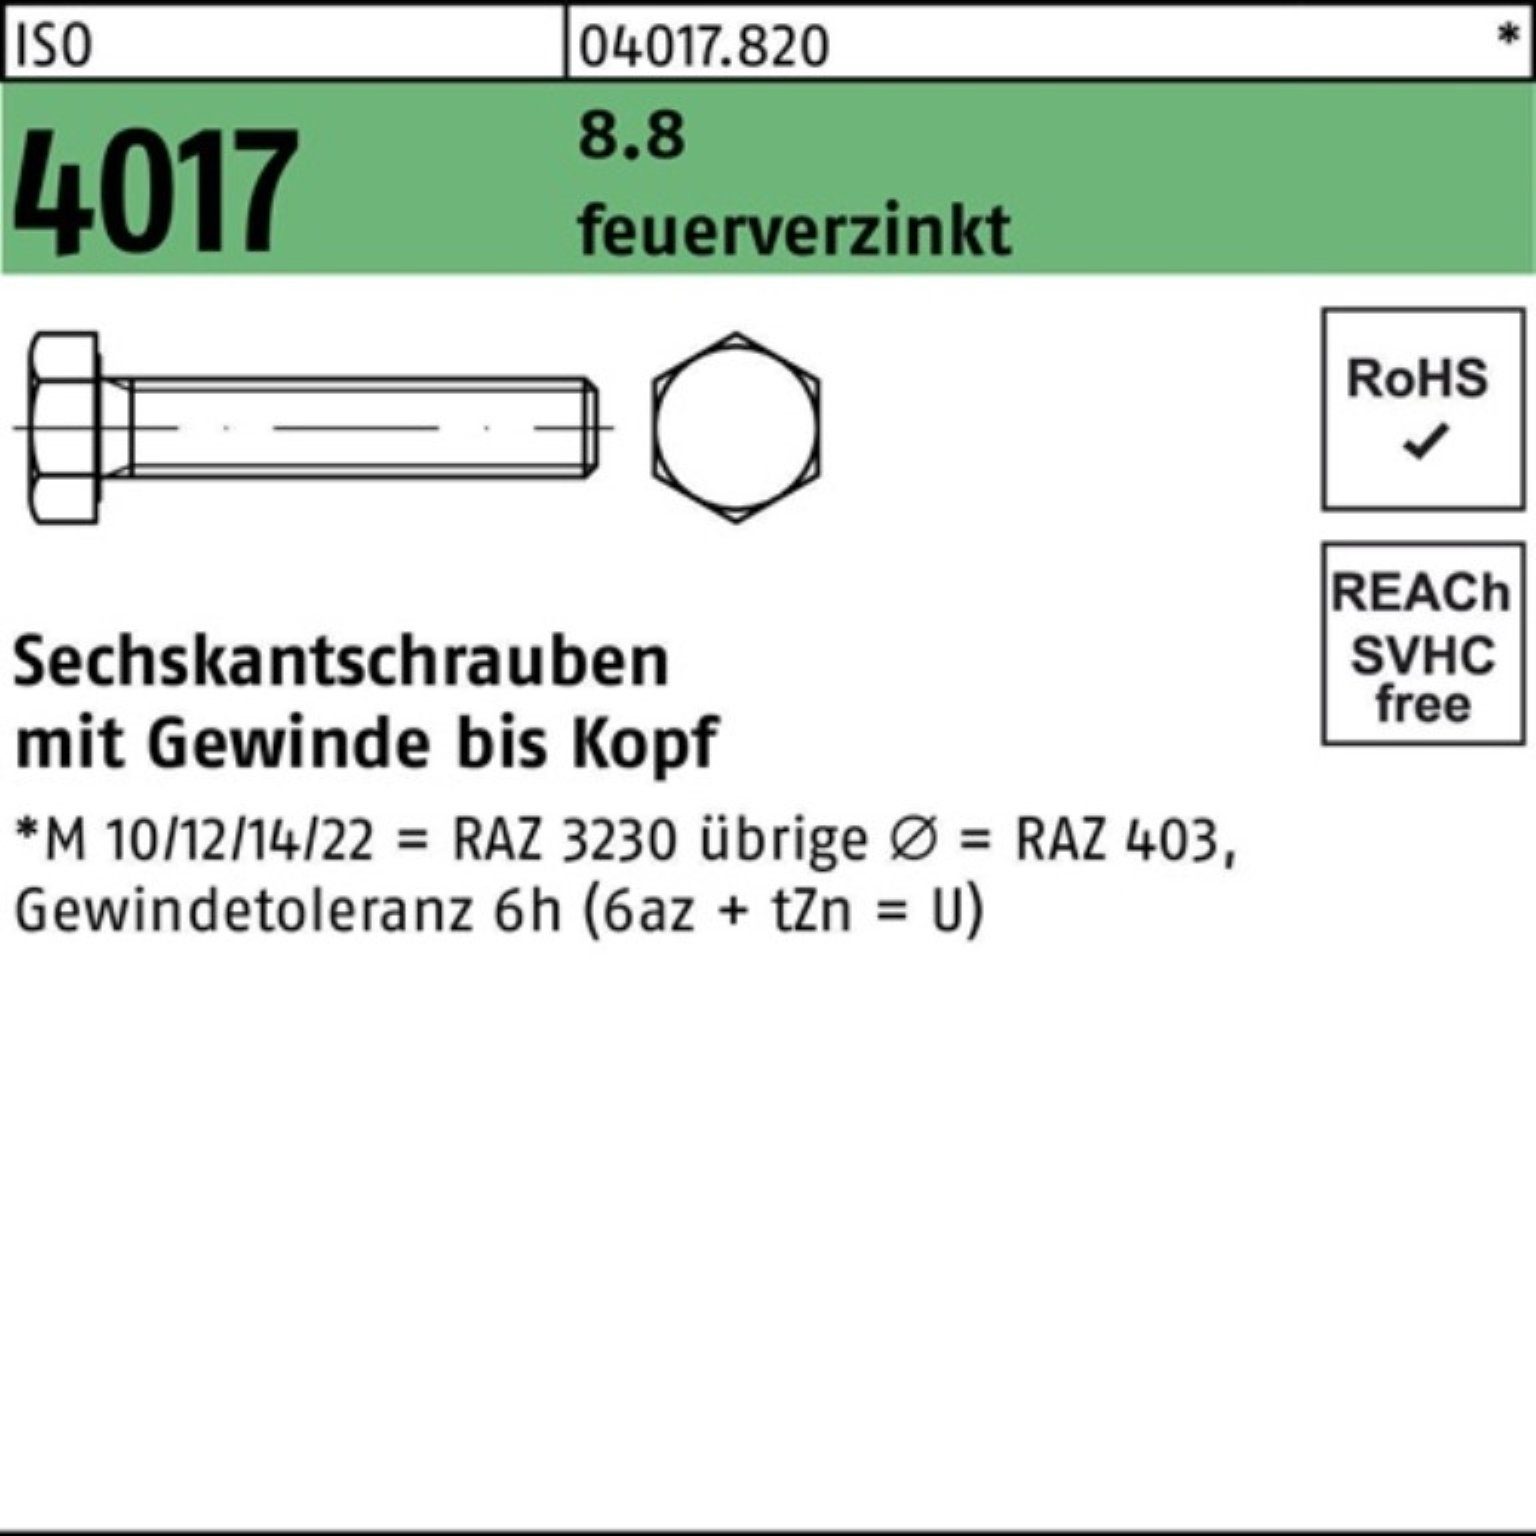 Liste der Produkte im Zusammenhang mit Bufab Sechskantschraube 200er Pack Sechskantschraube M8x 4017 ISO VG 8.8 12 200 feuerverz. St